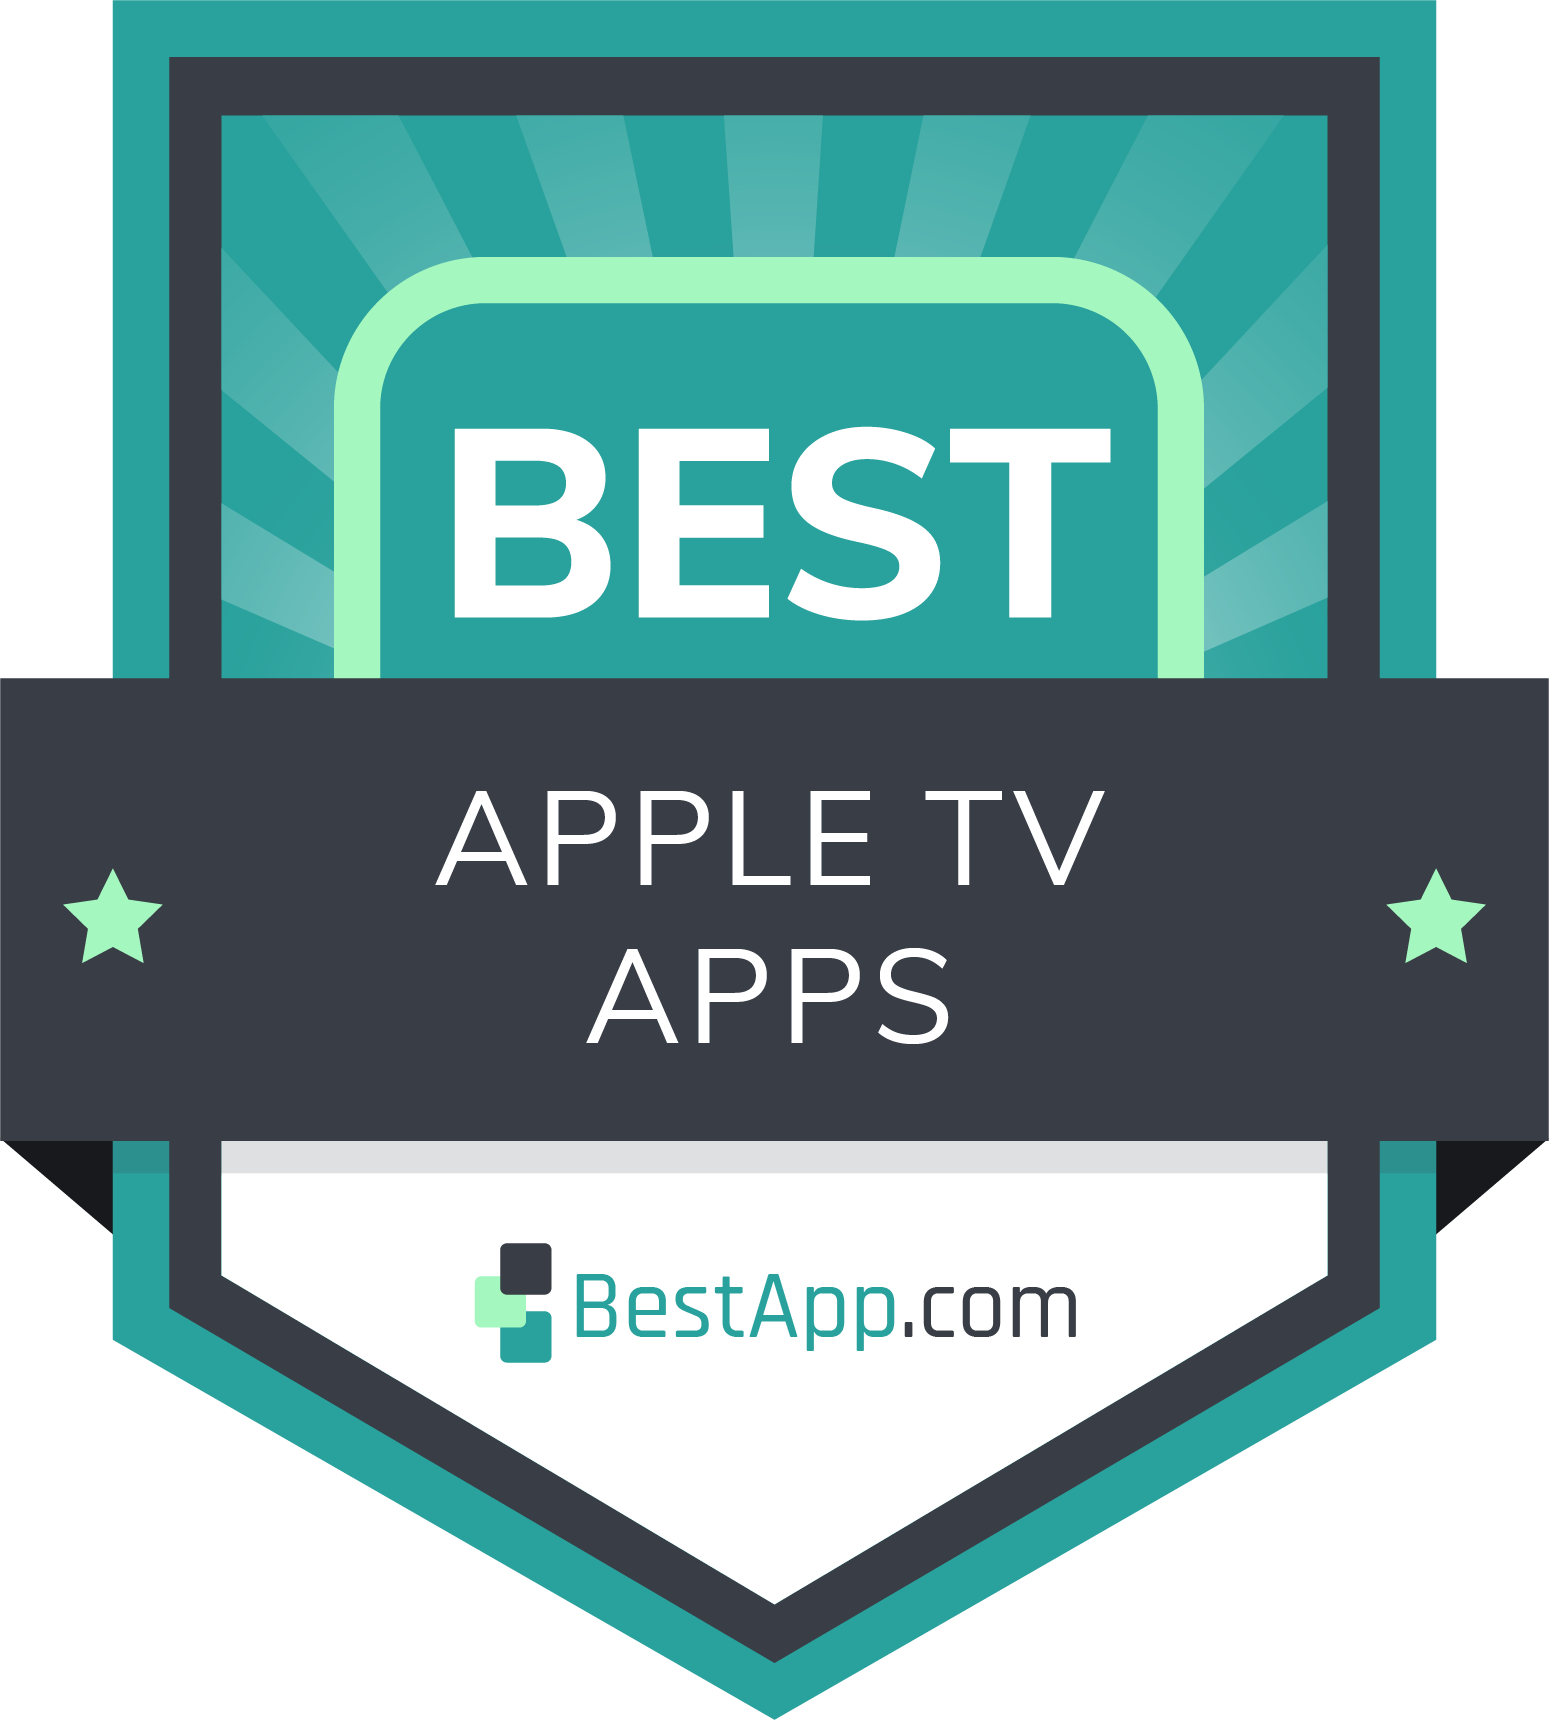 Best Apple TV Apps Badge